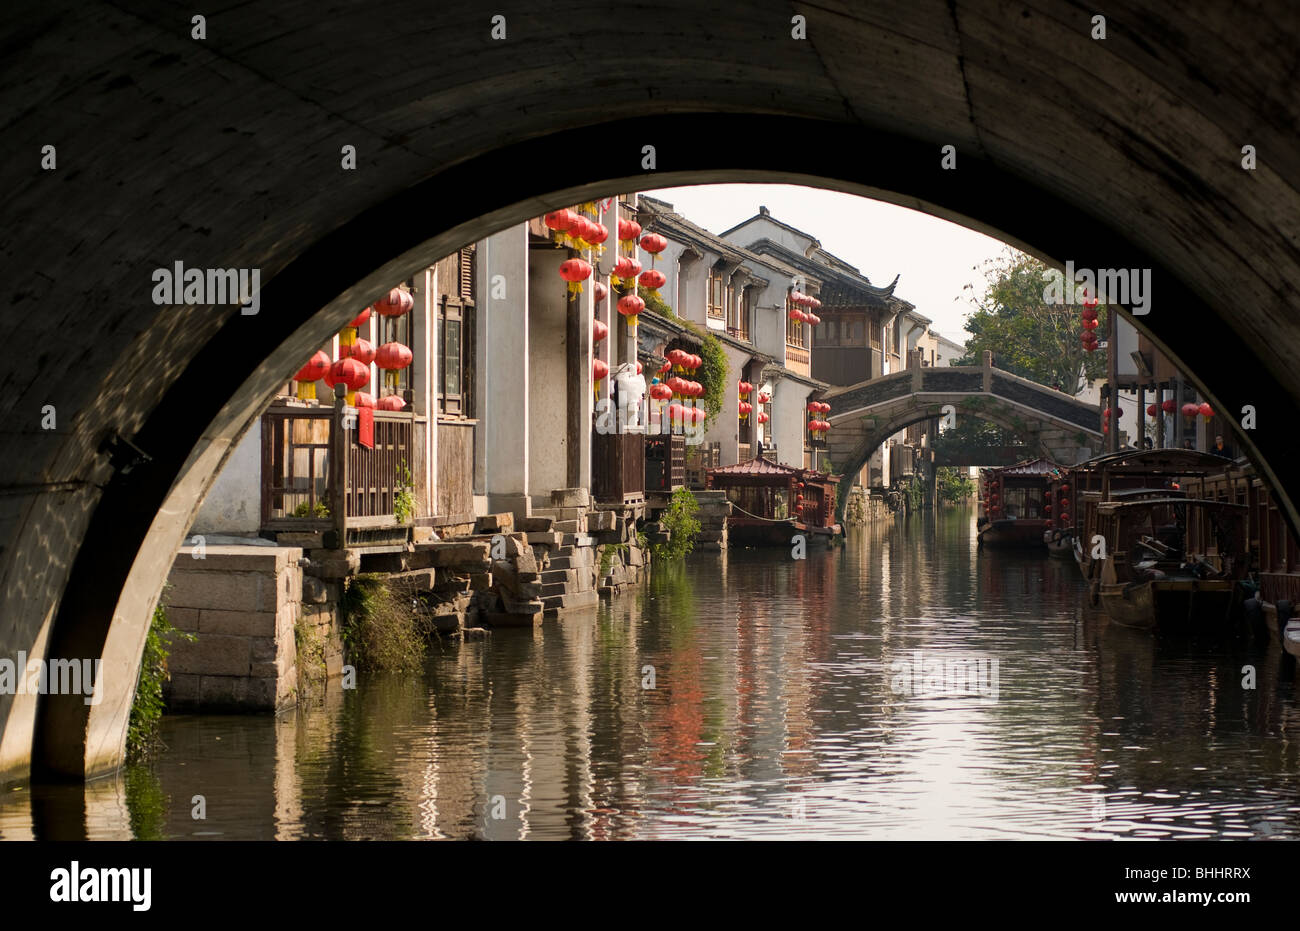 Scena lungo i canali in acqua storica area di città di Suzhou, provincia dello Jiangsu, Cina e Asia Foto Stock